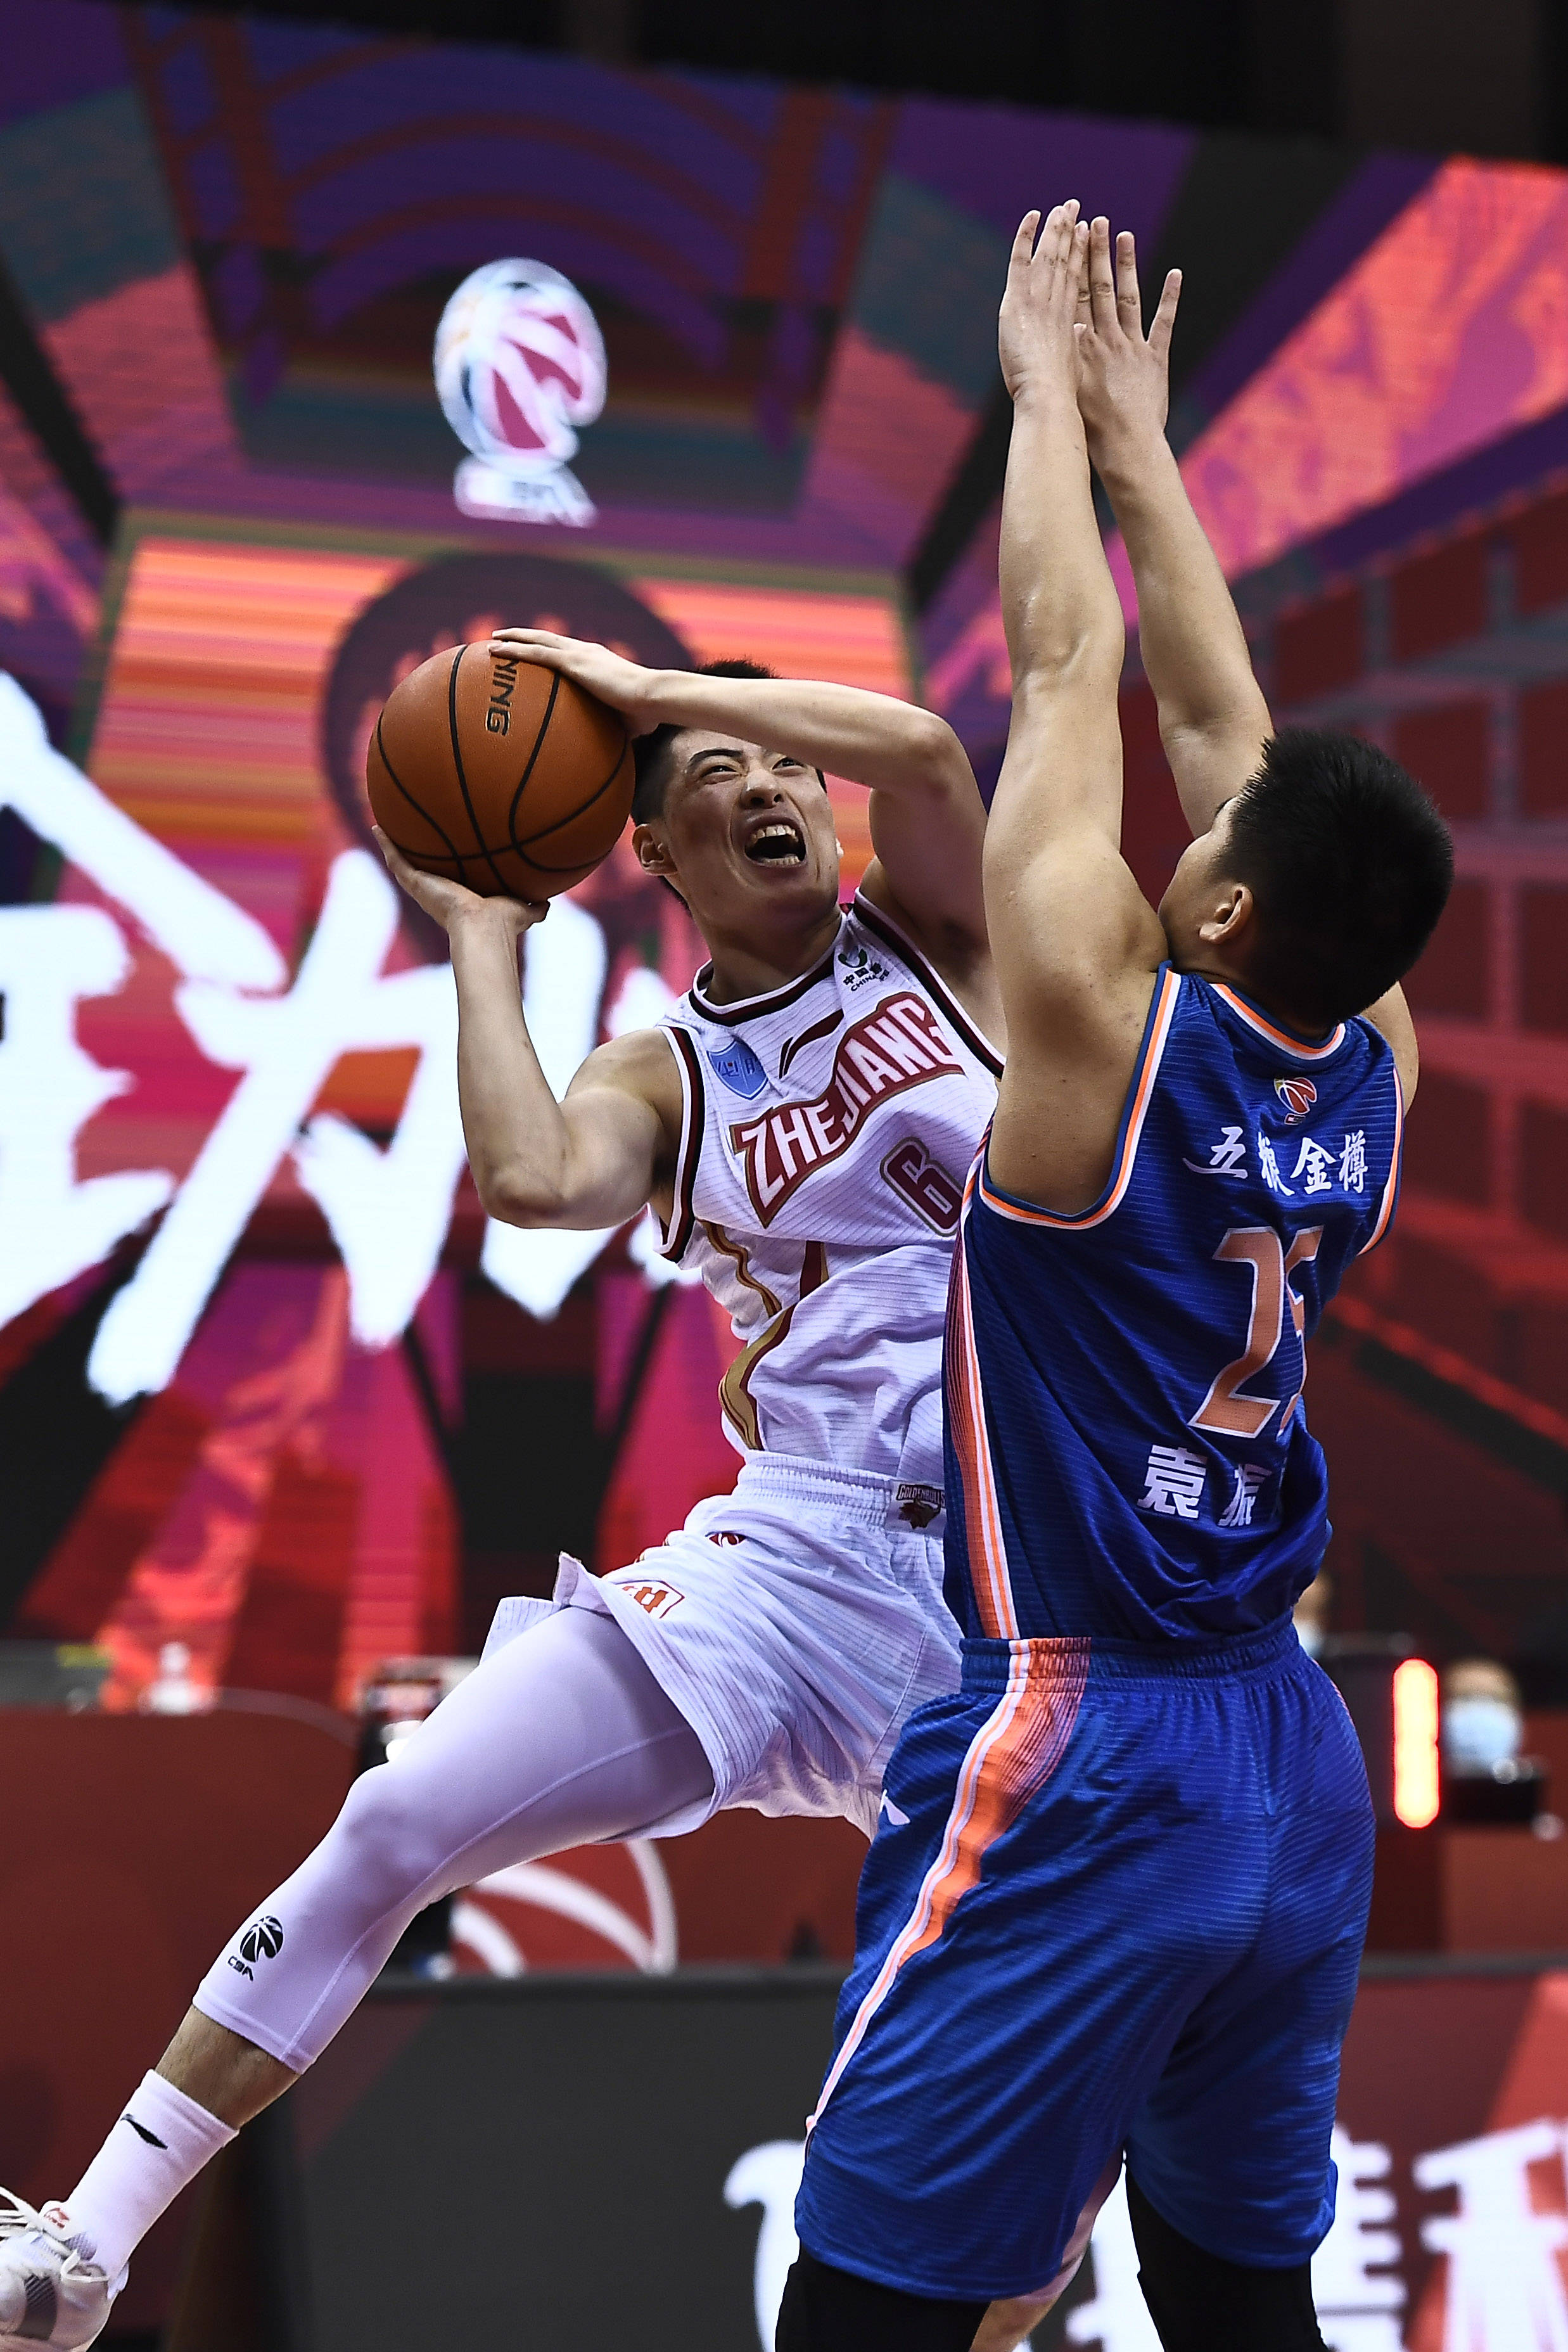 篮球——cba复赛第二阶段:浙江稠州银行迎战四川五粮金樽